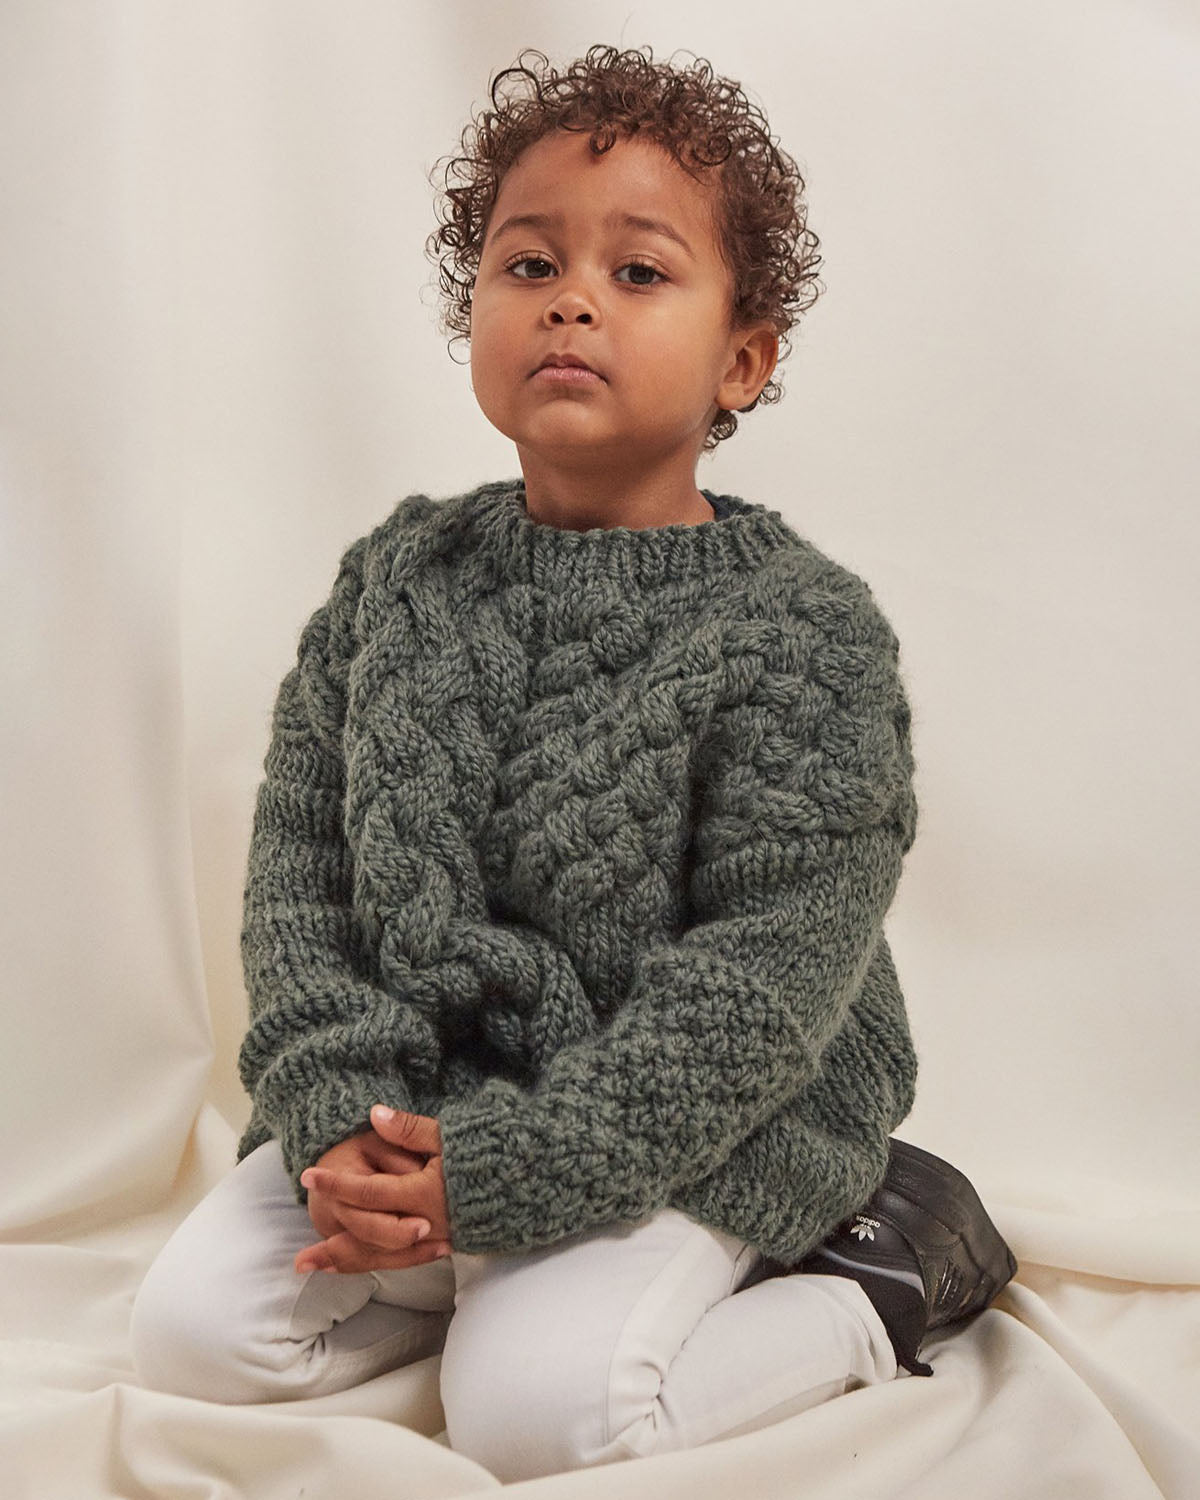 Mini Heartbreaker: Moss Green Wool Sweater – The Knotty Ones